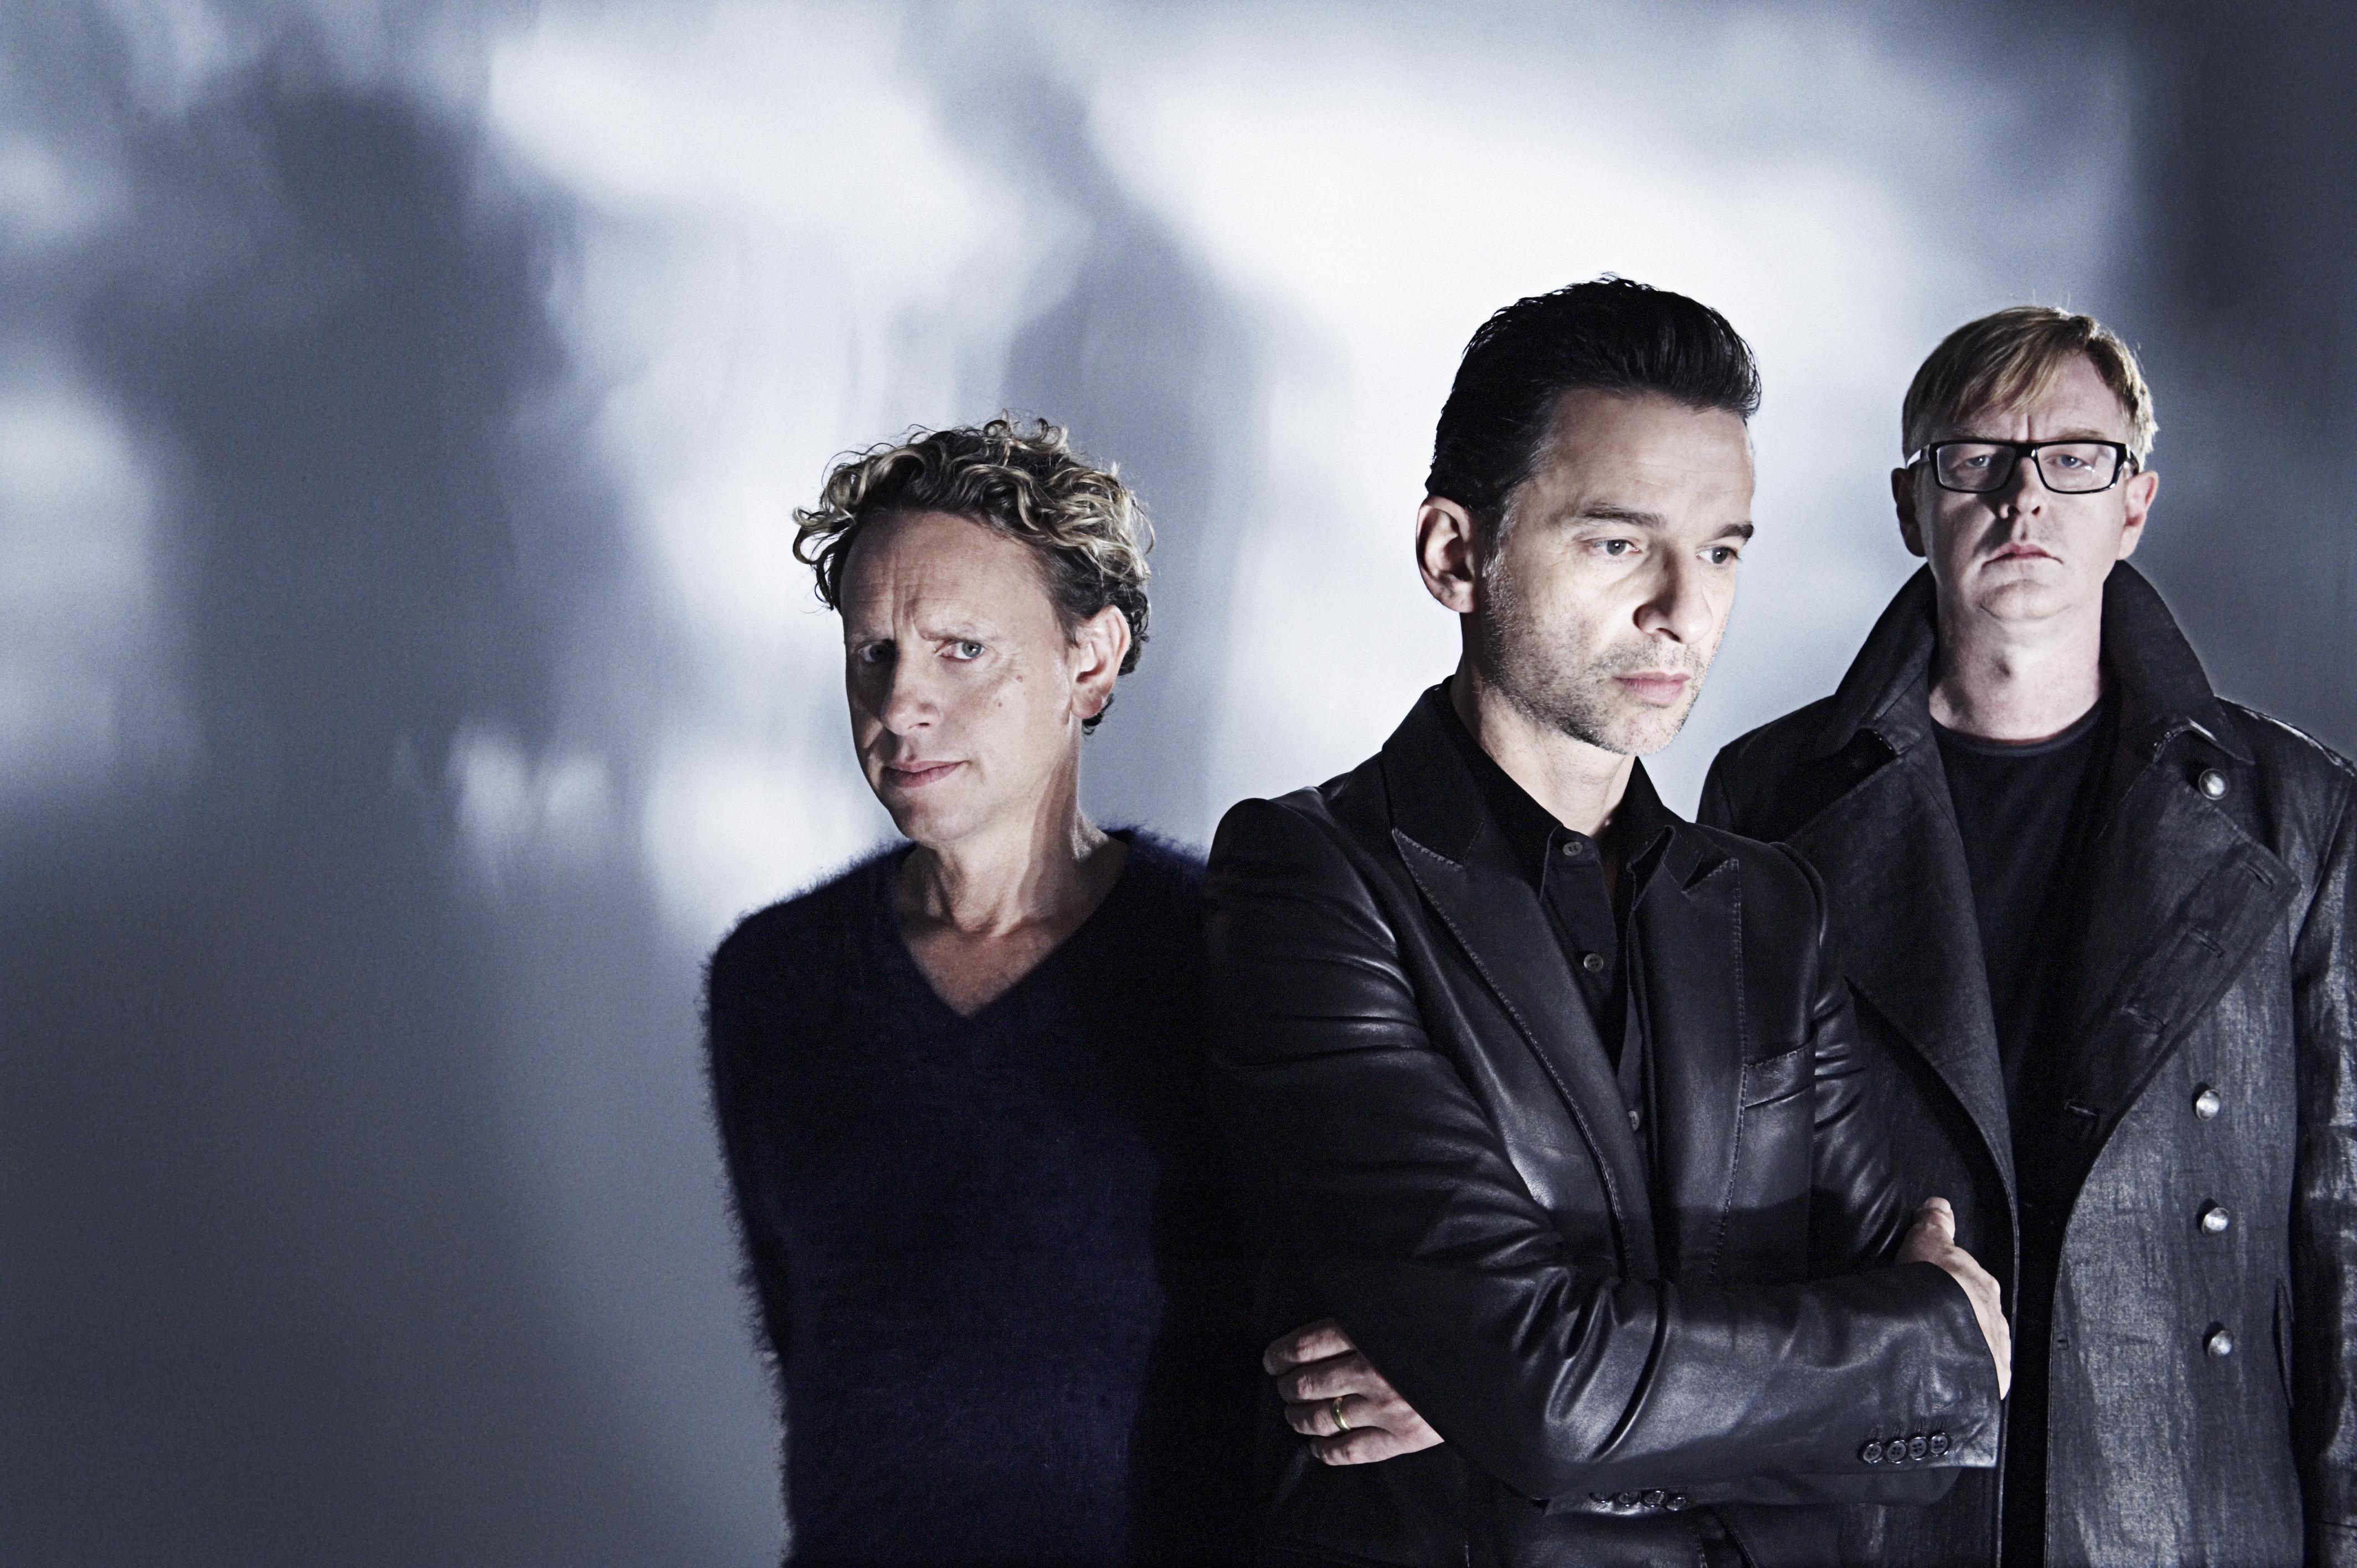 HD Depeche Mode Wallpaper and Photo. HD Music Wallpaper